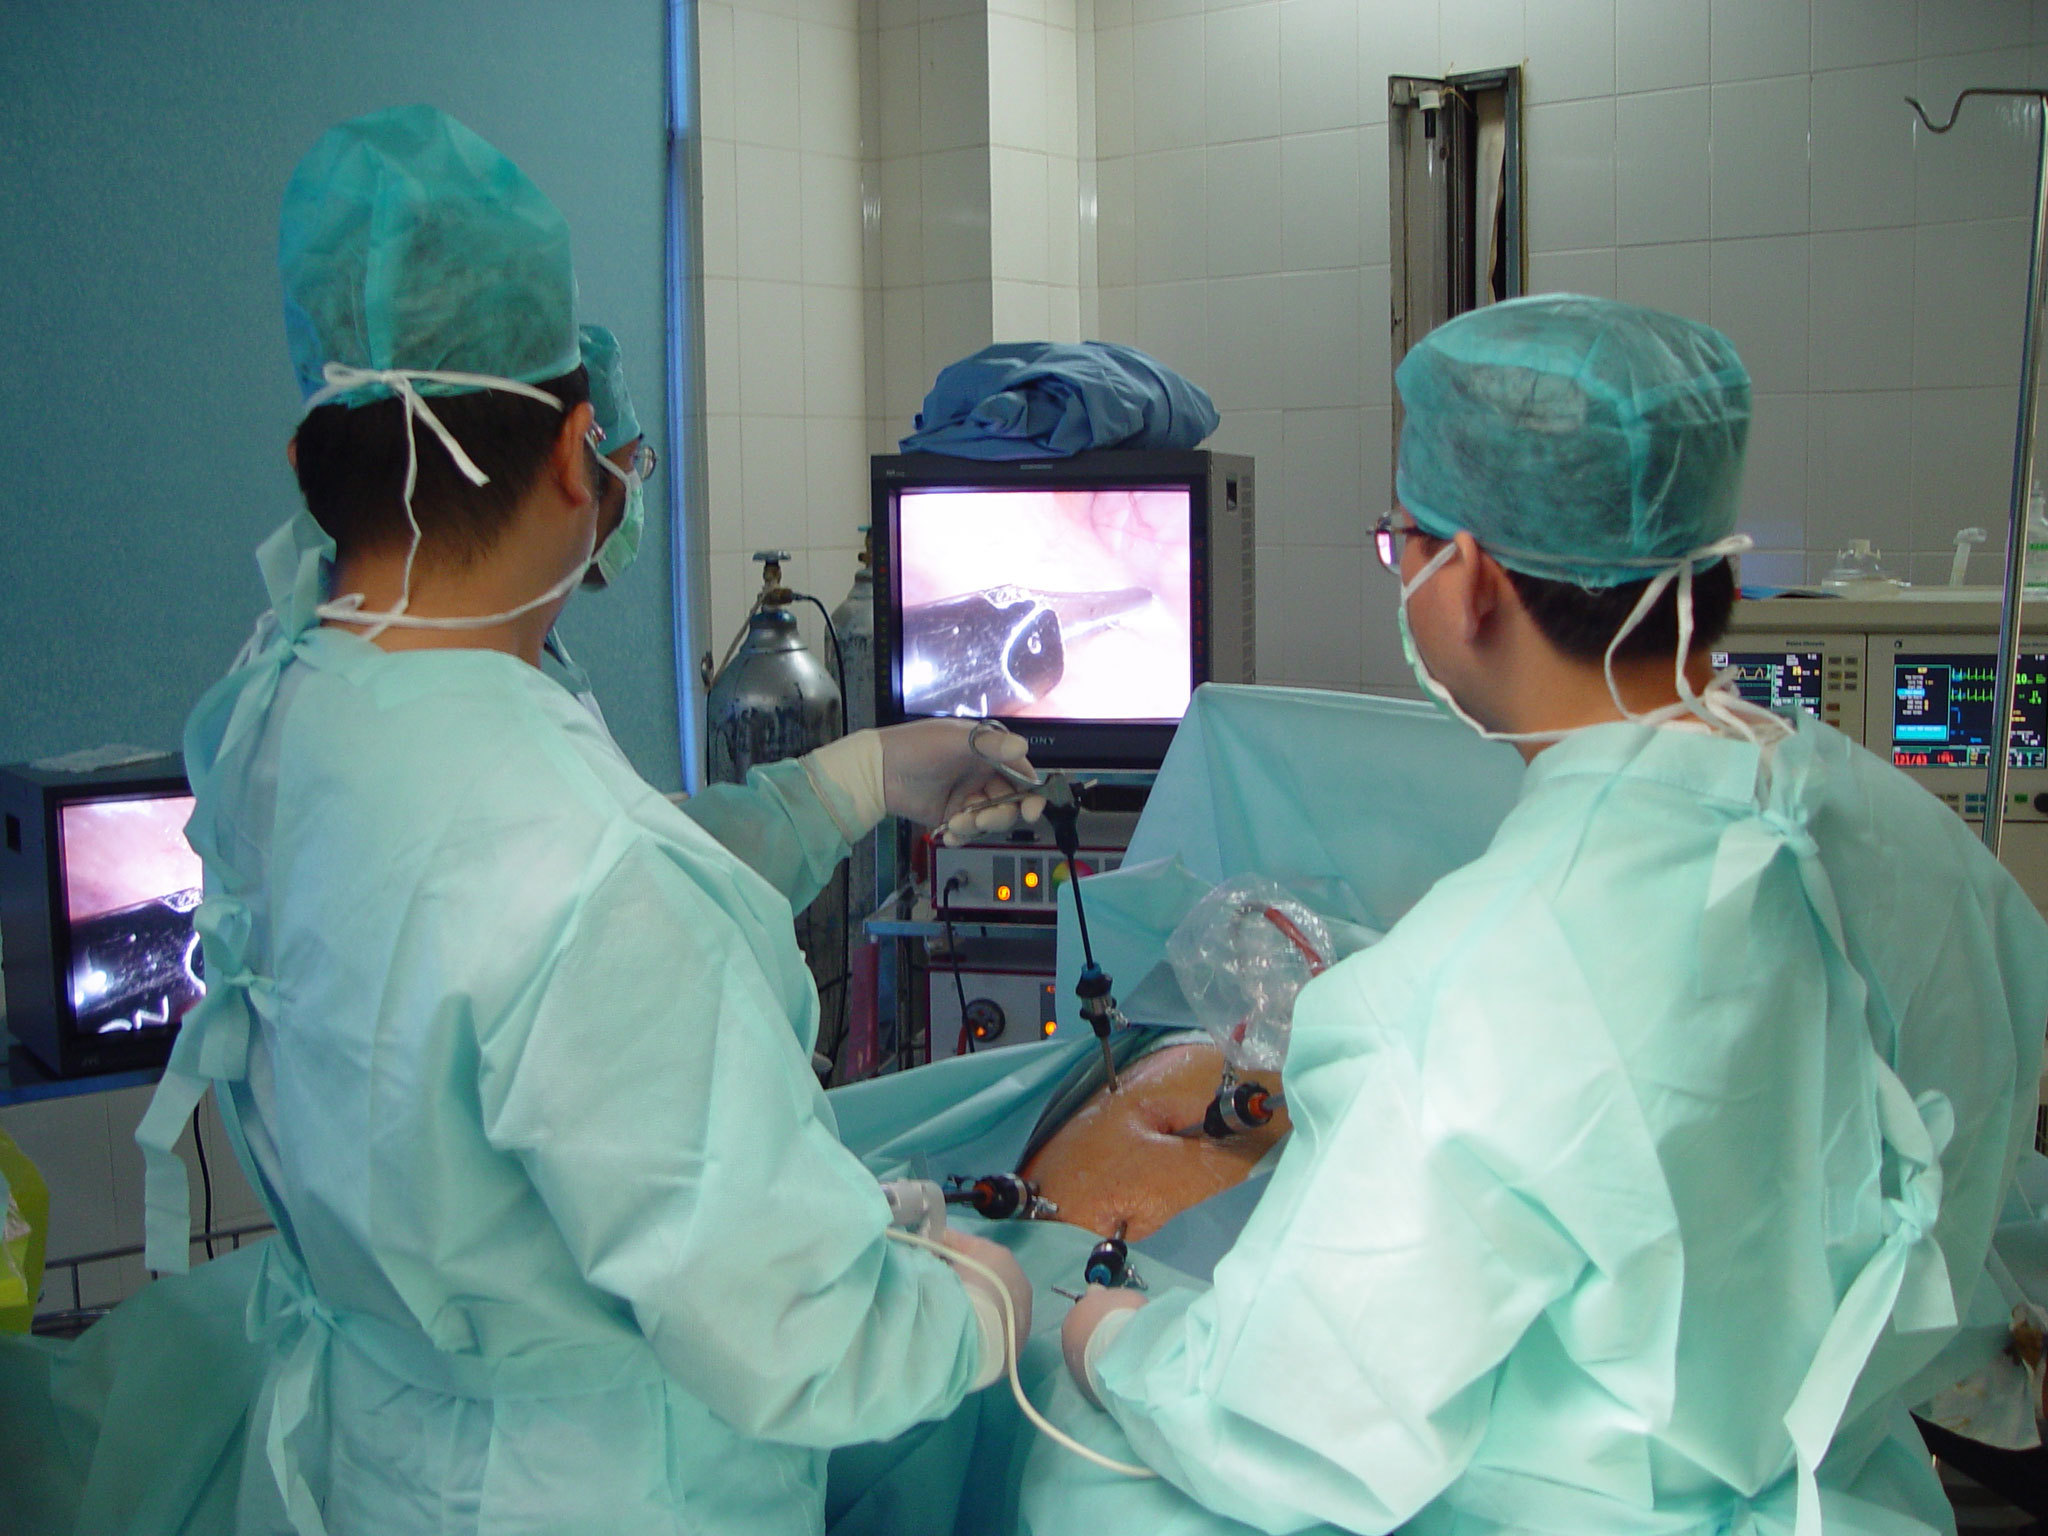 虞城县人民医院神经外科进入显微神经外科时代